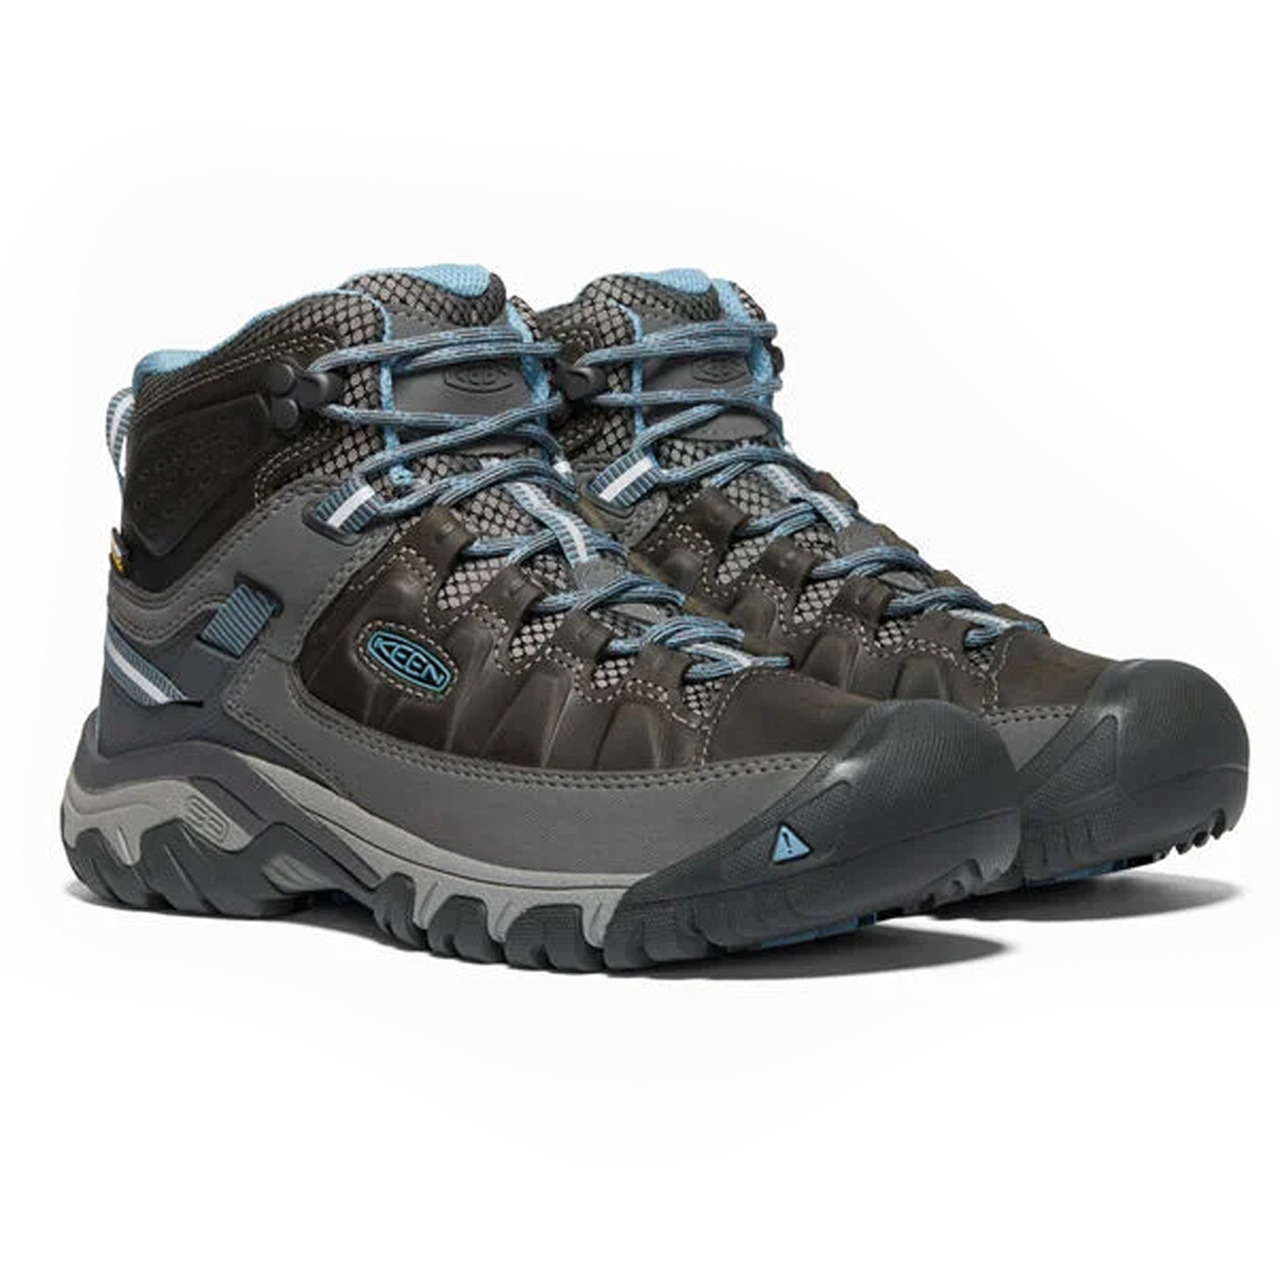 KEEN Women's Targhee III Waterproof Mid Hiking Boots size:6 ($150)